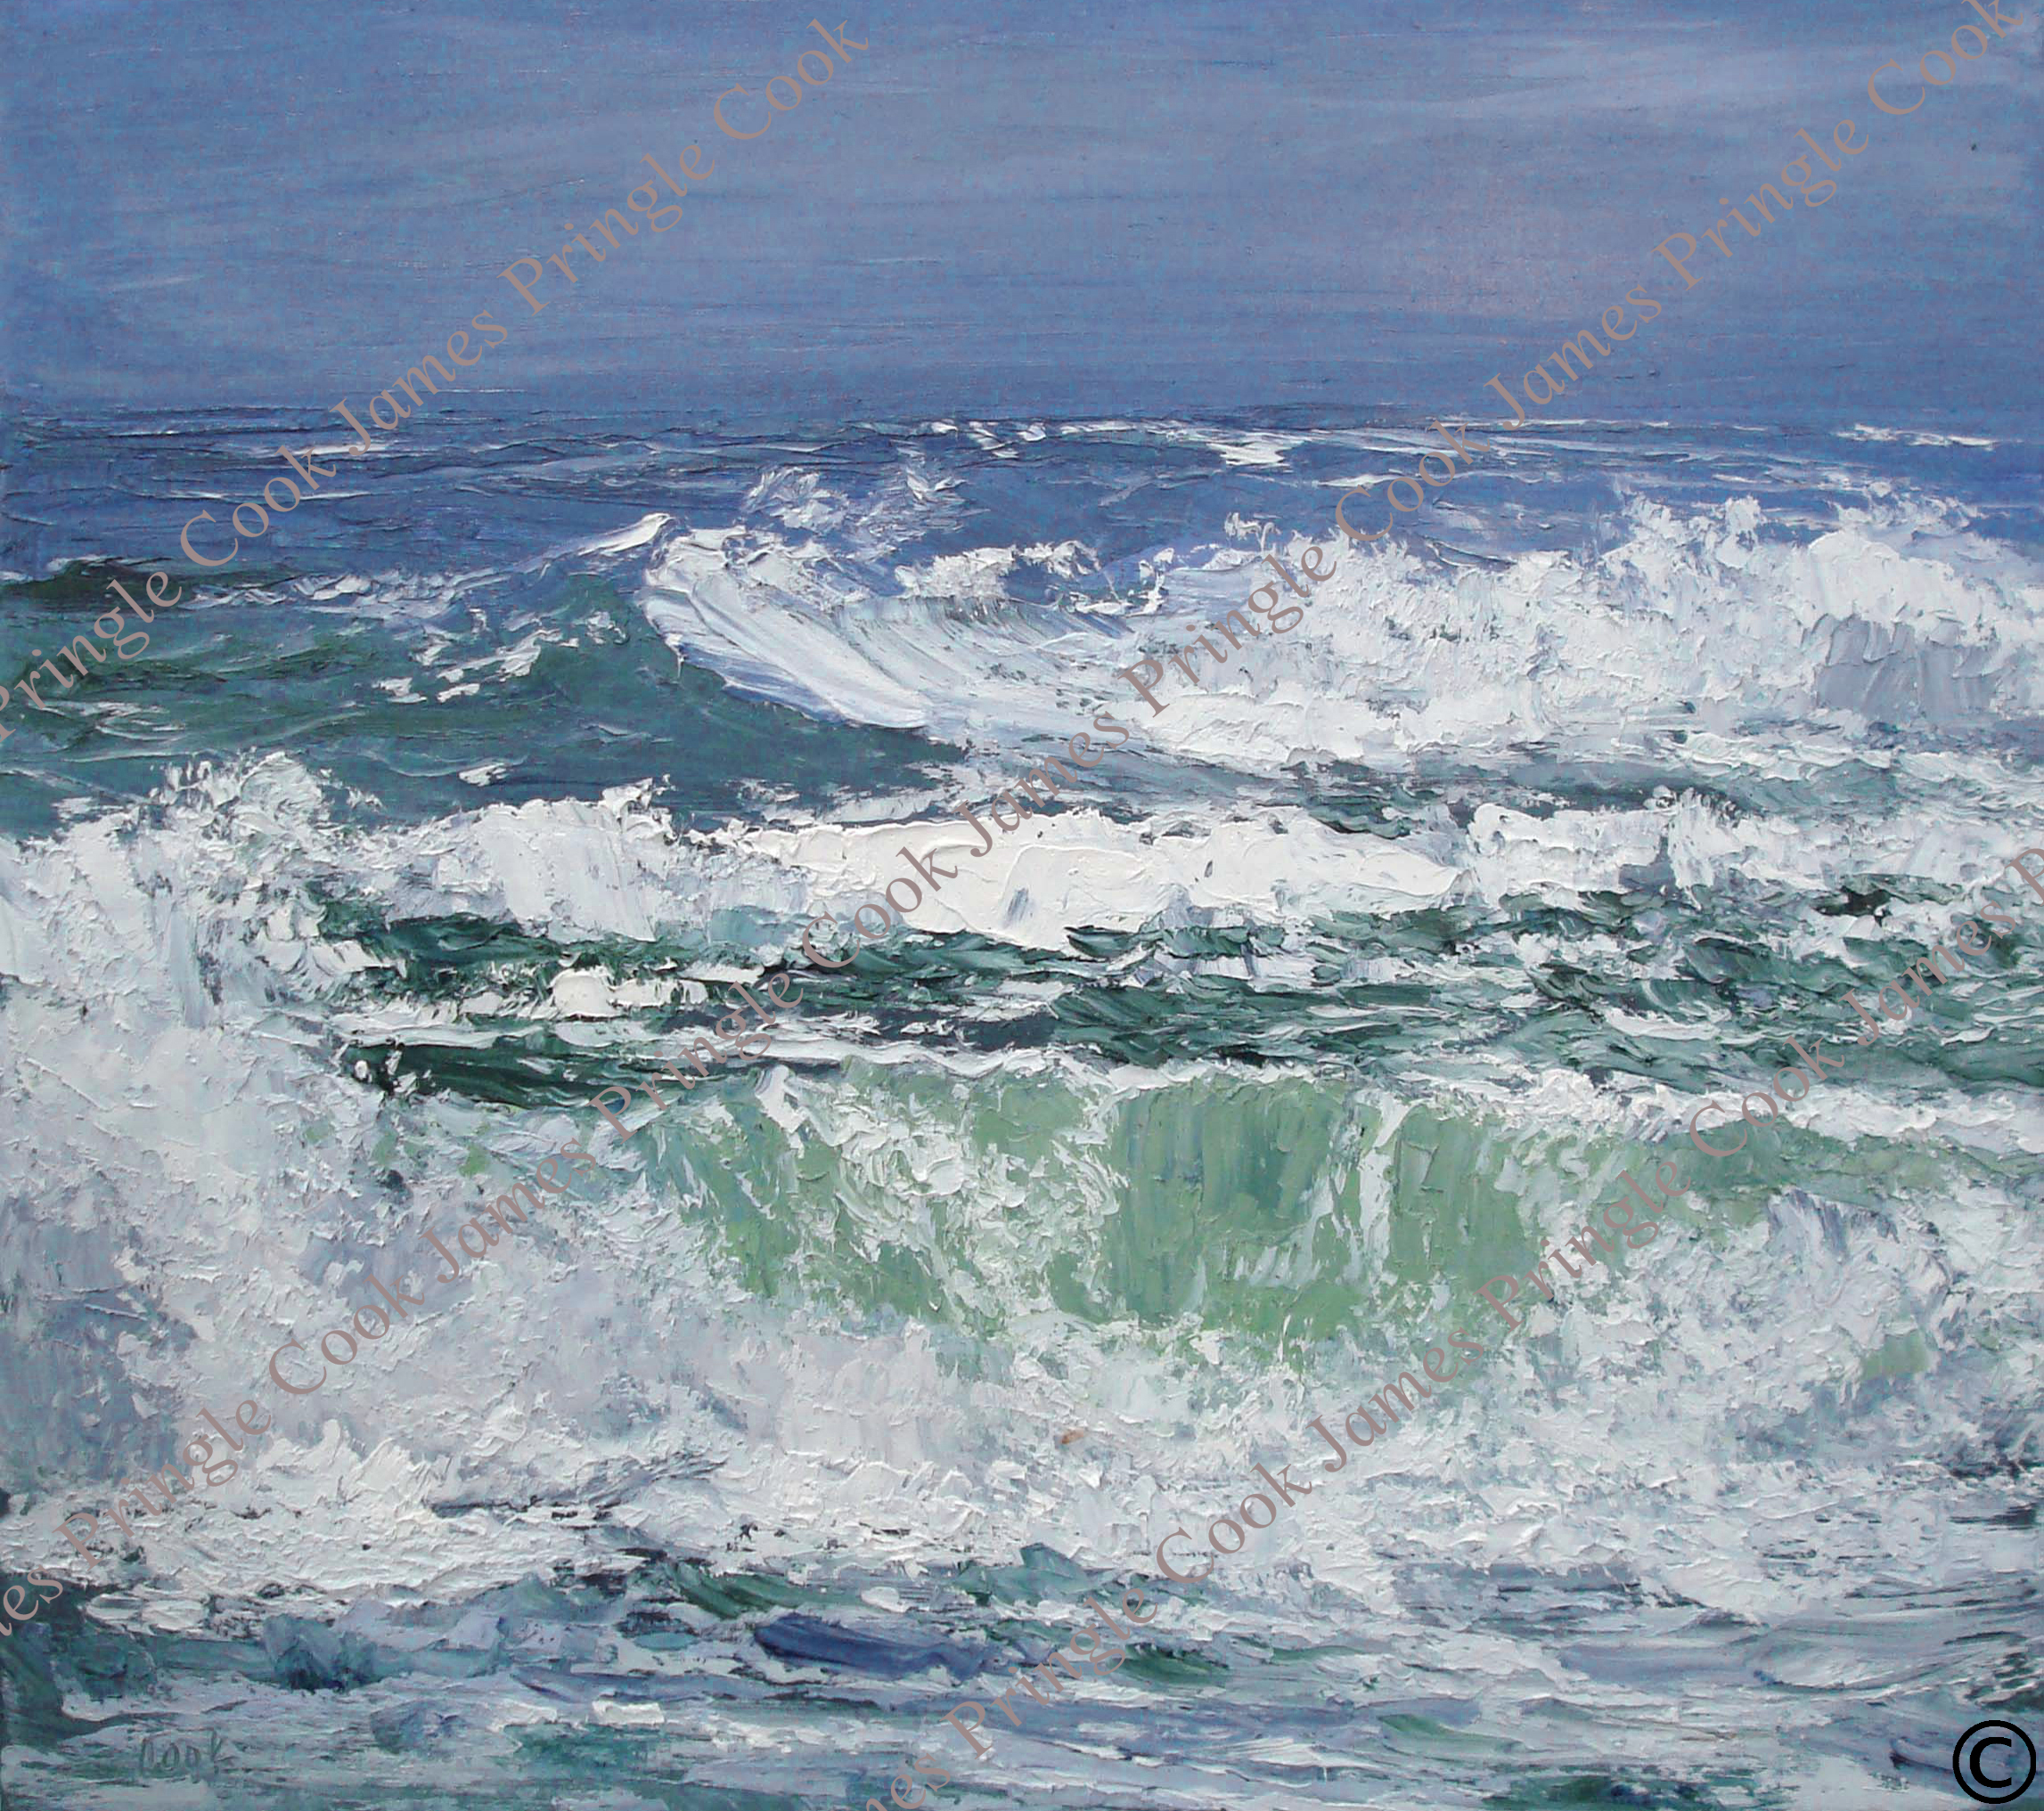 James Pringle Cook oil painting of ocean waves